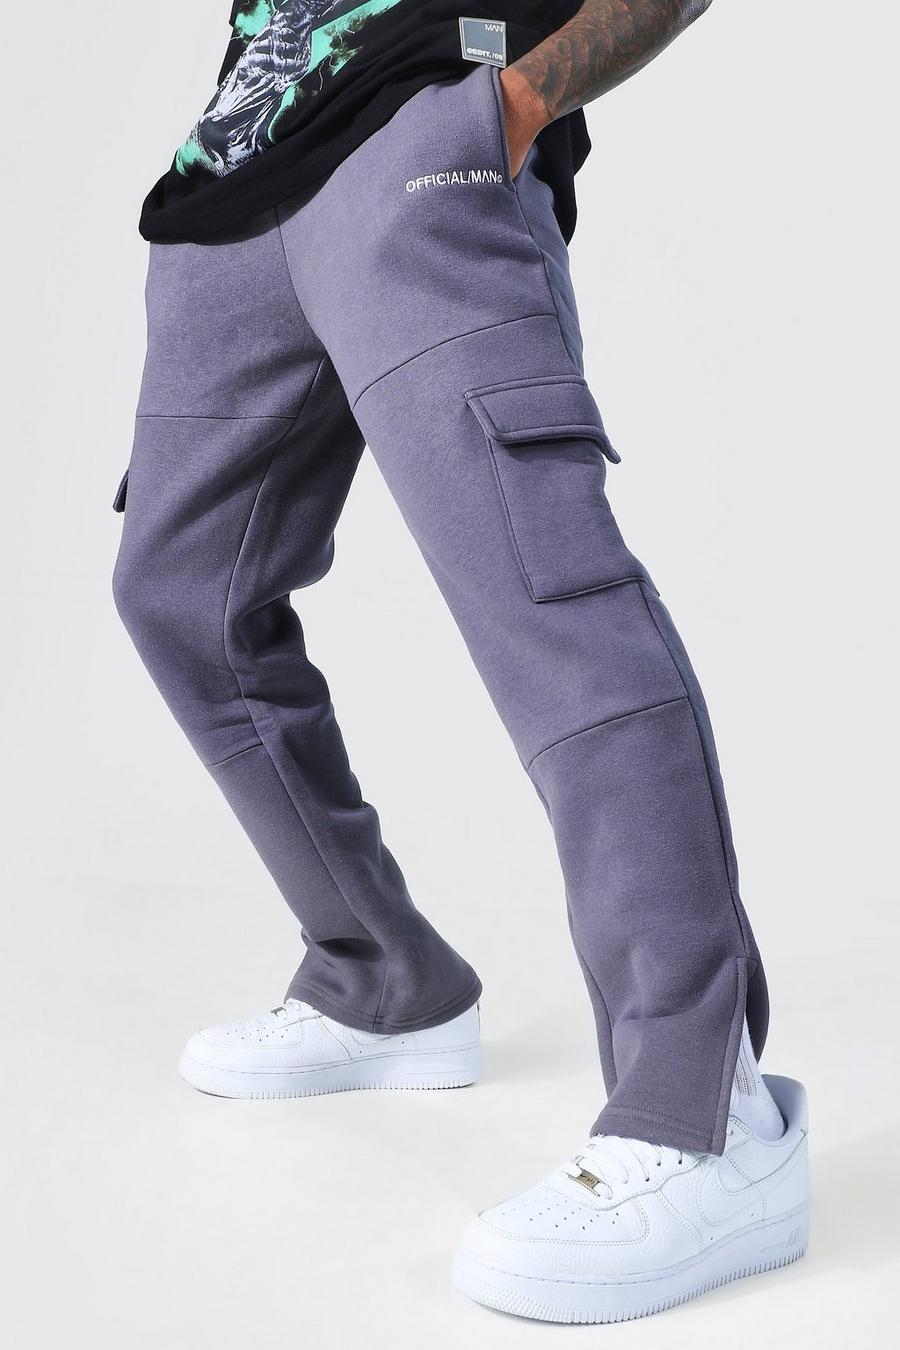 Pantalón deportivo cargo Official holgado con abertura en el bajo, Charcoal gris image number 1